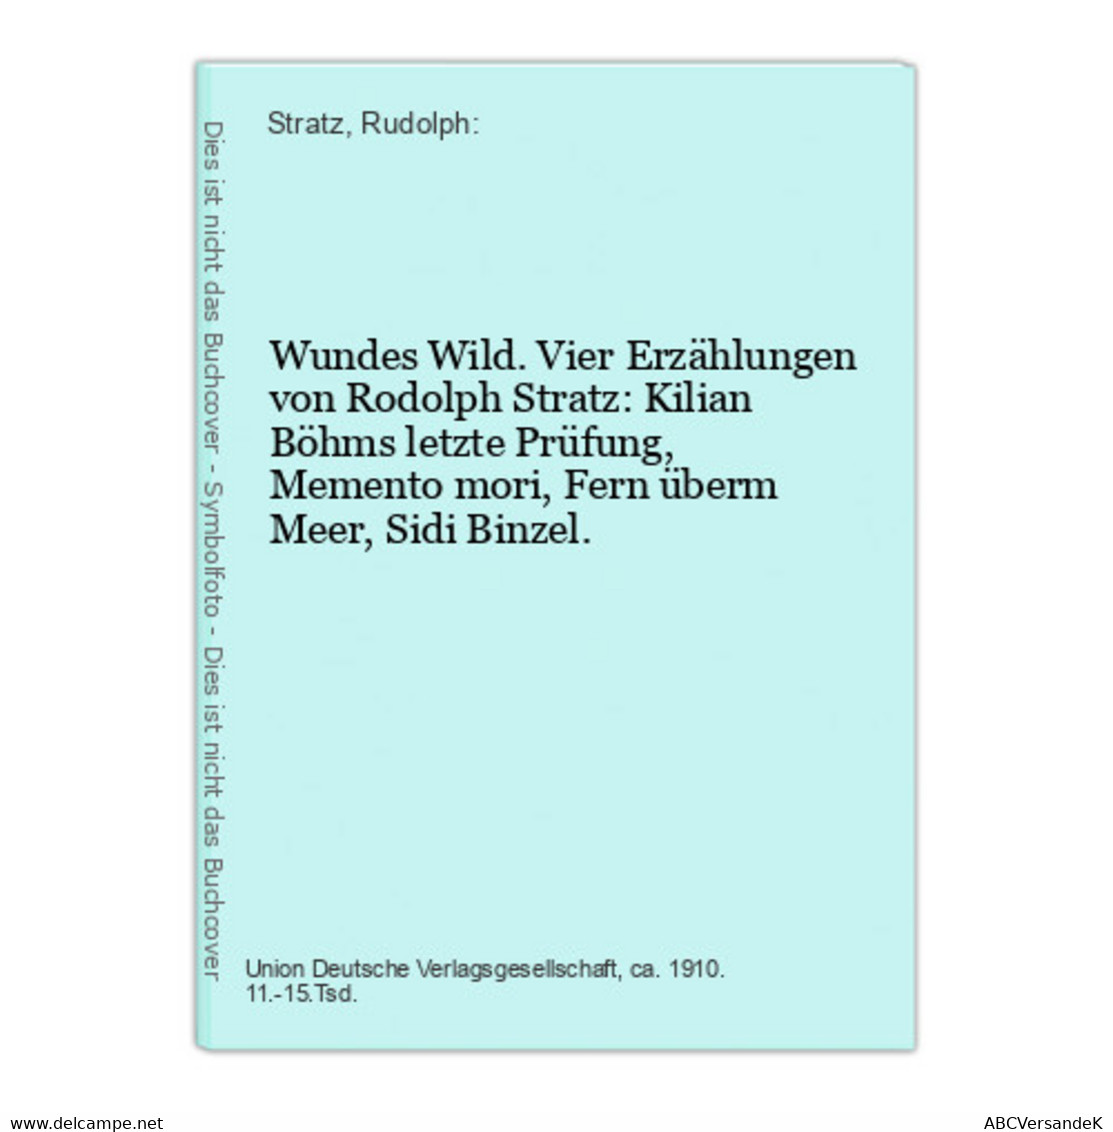 Wundes Wild. Vier Erzählungen Von Rodolph Stratz: Kilian Böhms Letzte Prüfung, Memento Mori, Fern überm Meer, - Short Fiction